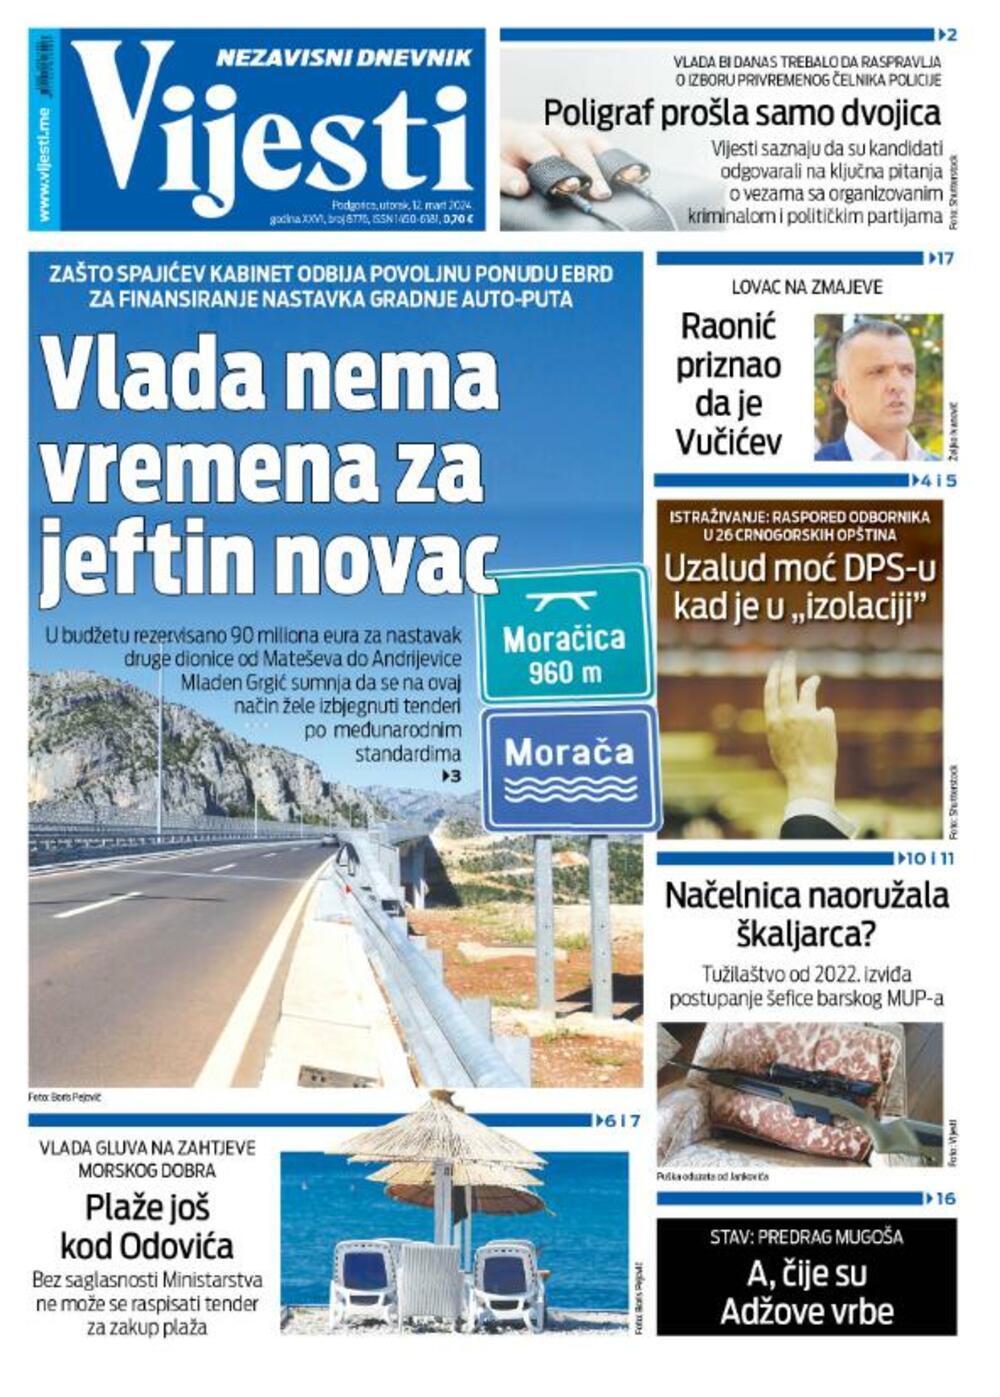 Naslovna strana "Vijesti" za 12. mart 2024., Foto: Vijesti